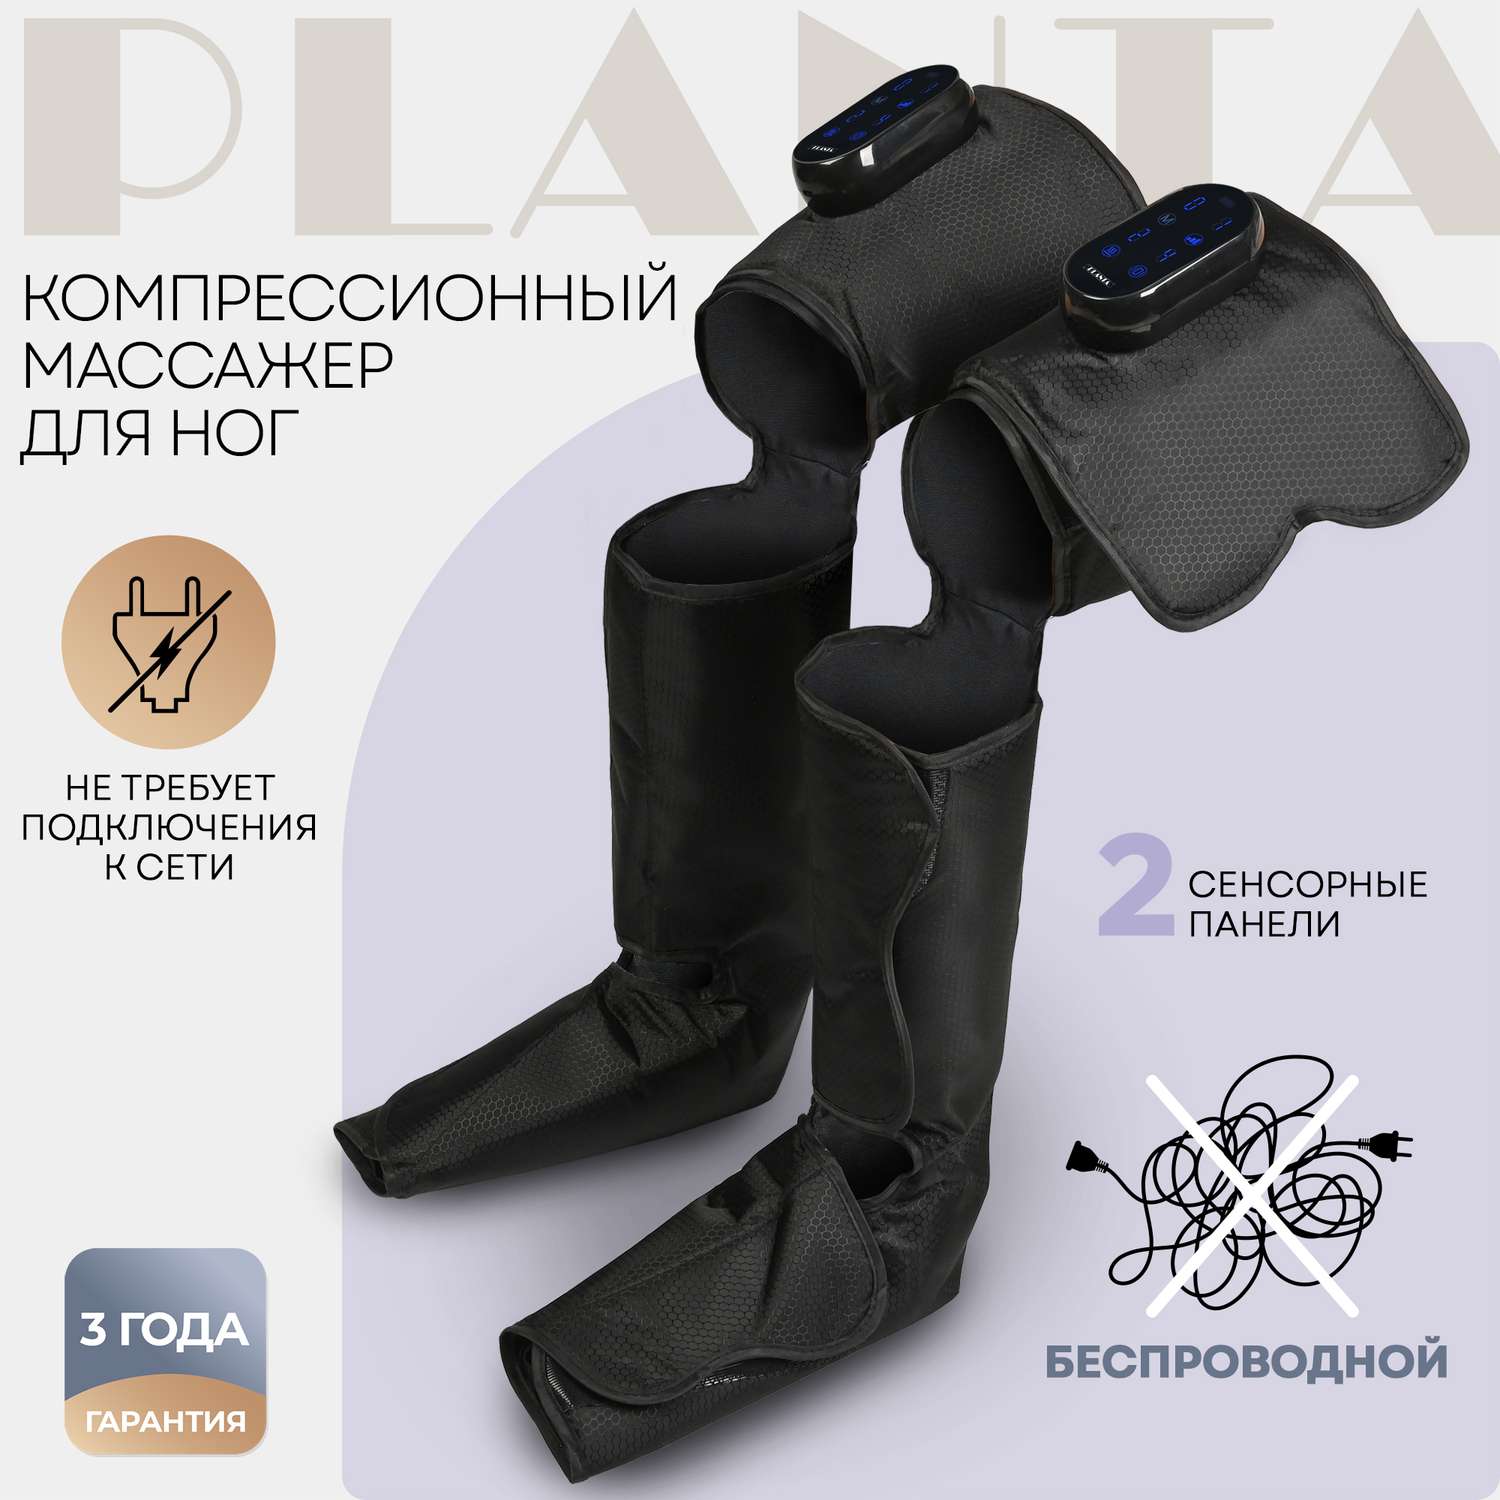 Компрессионный массажер Planta для ног беспроводной MFC-150 лимфодренажный с подогревом - фото 2